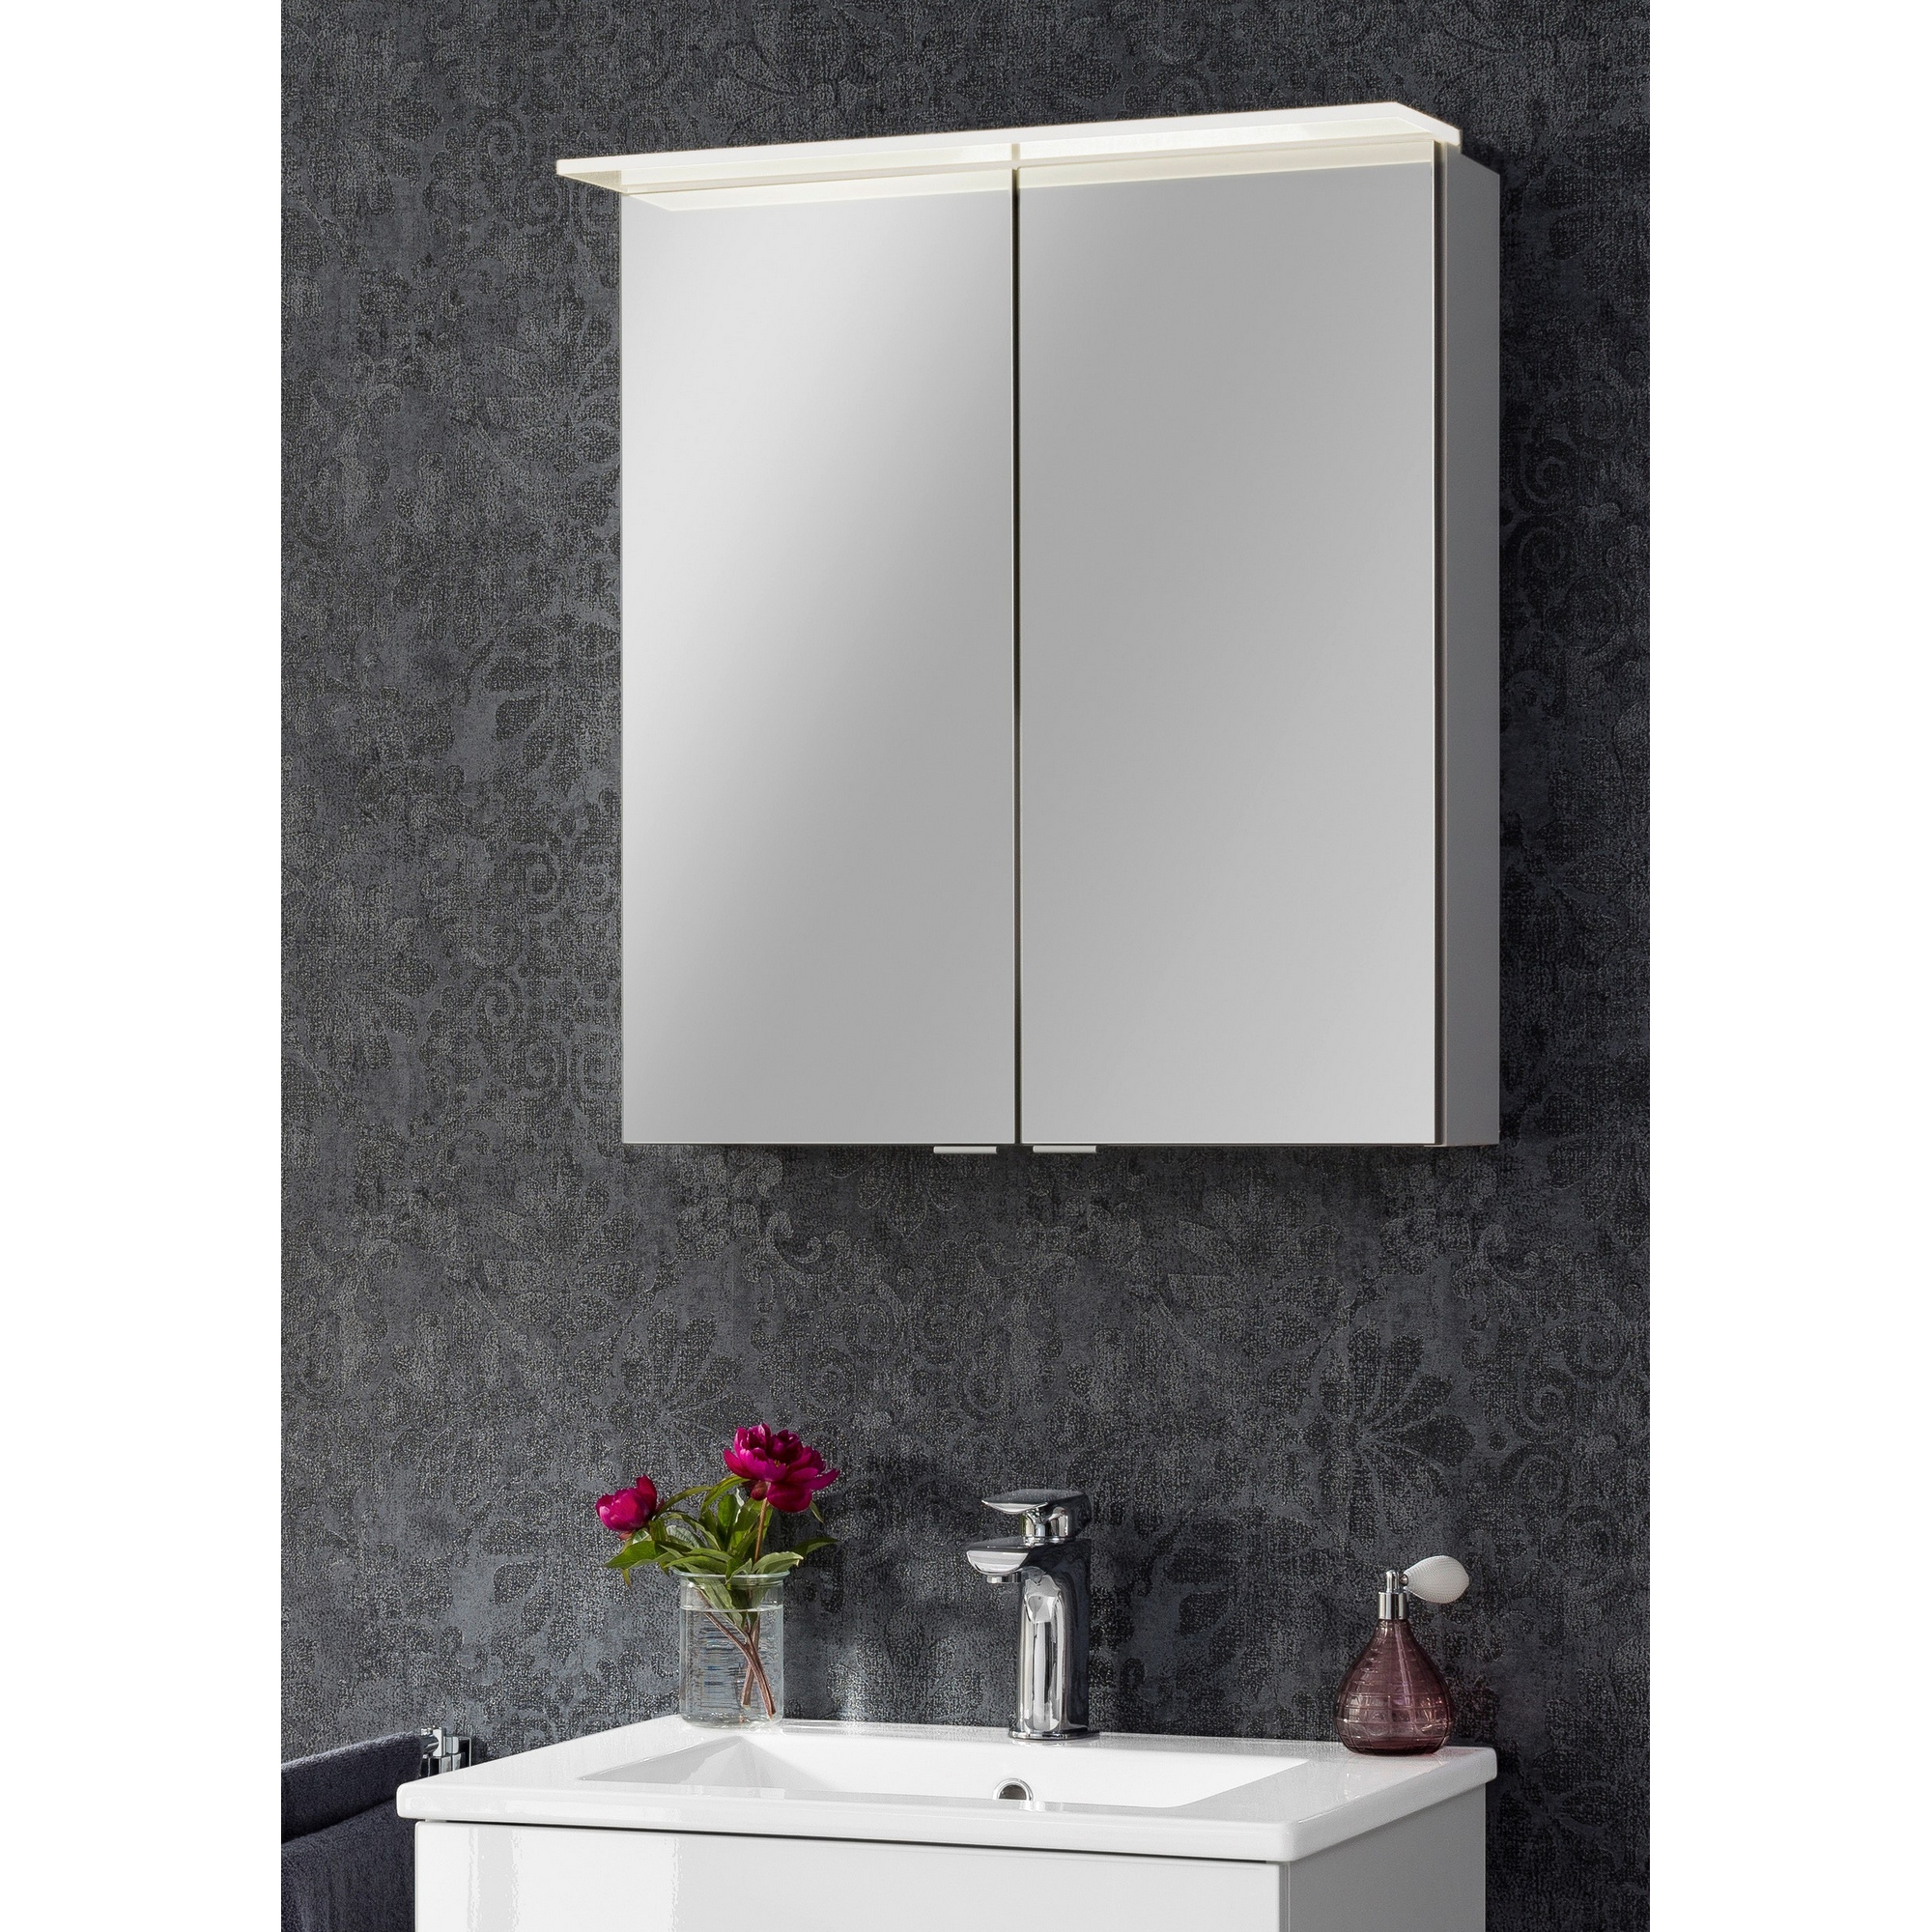 LED-Spiegelschrank 'B.Perfekt' weiß 60 x 69,4 x 15,2 cm